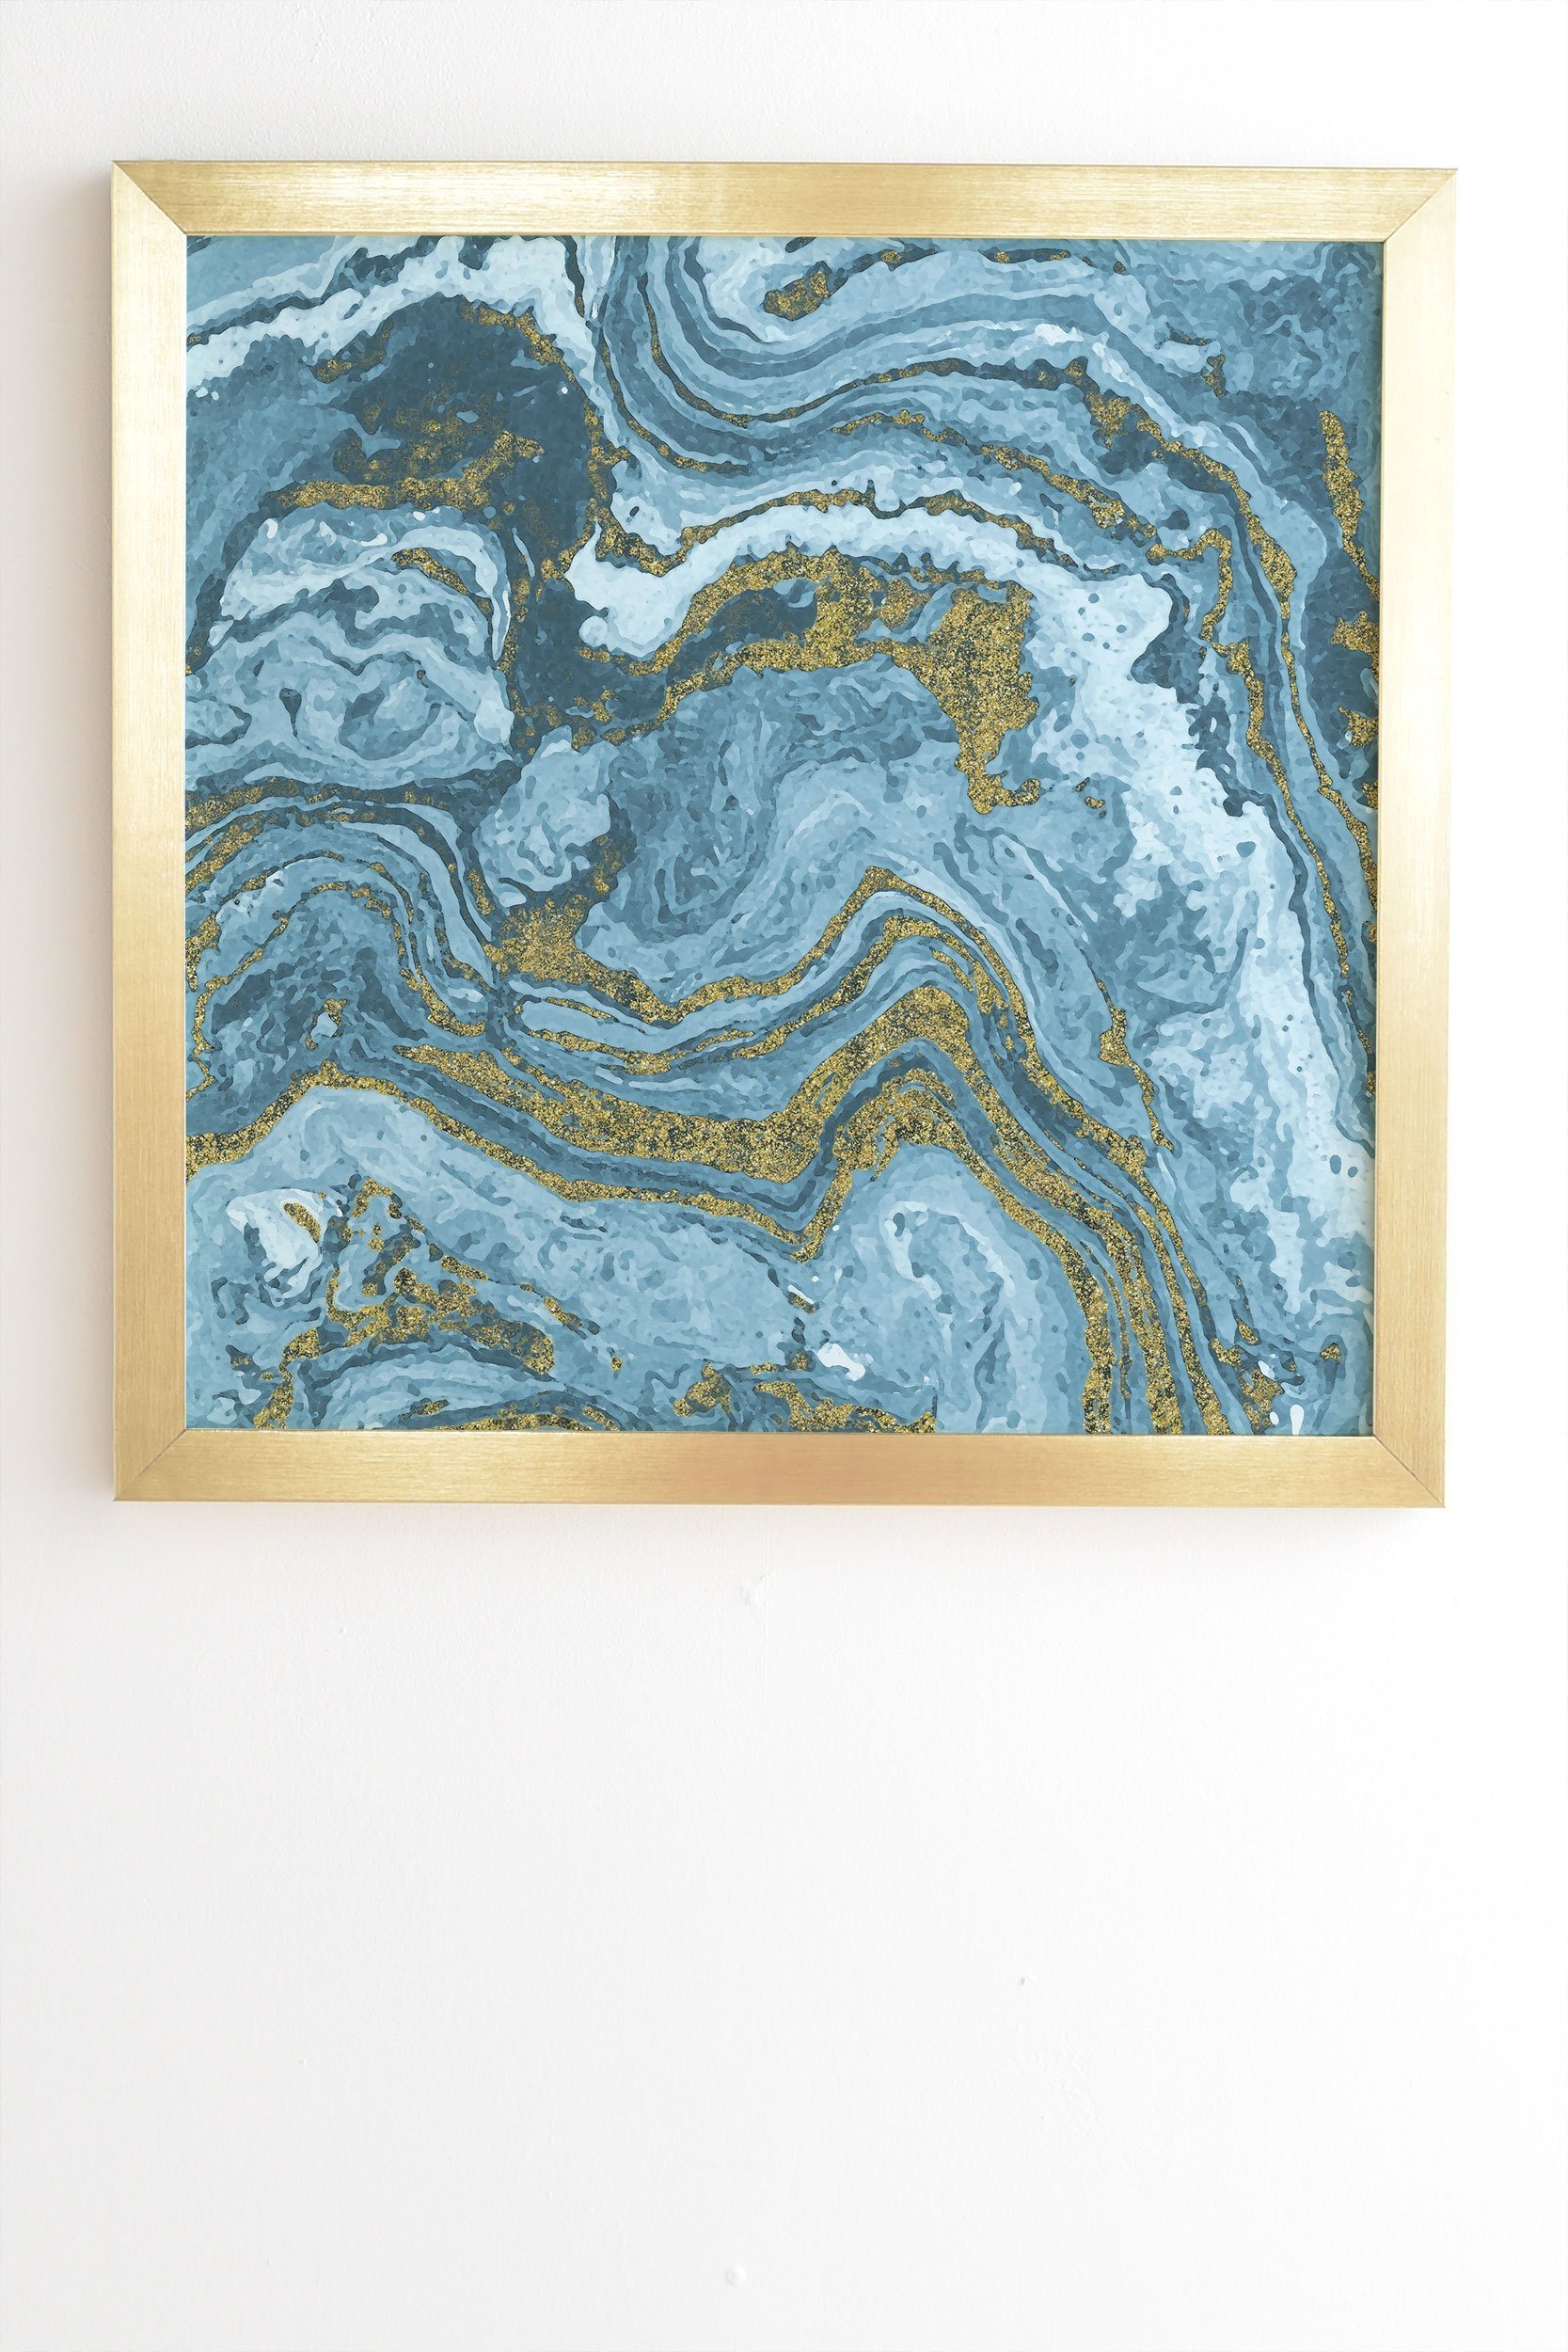 Emanuela Carratoni Gold Waves on Blue Gold Framed Wall Art - 8" x 9.5" - Image 1